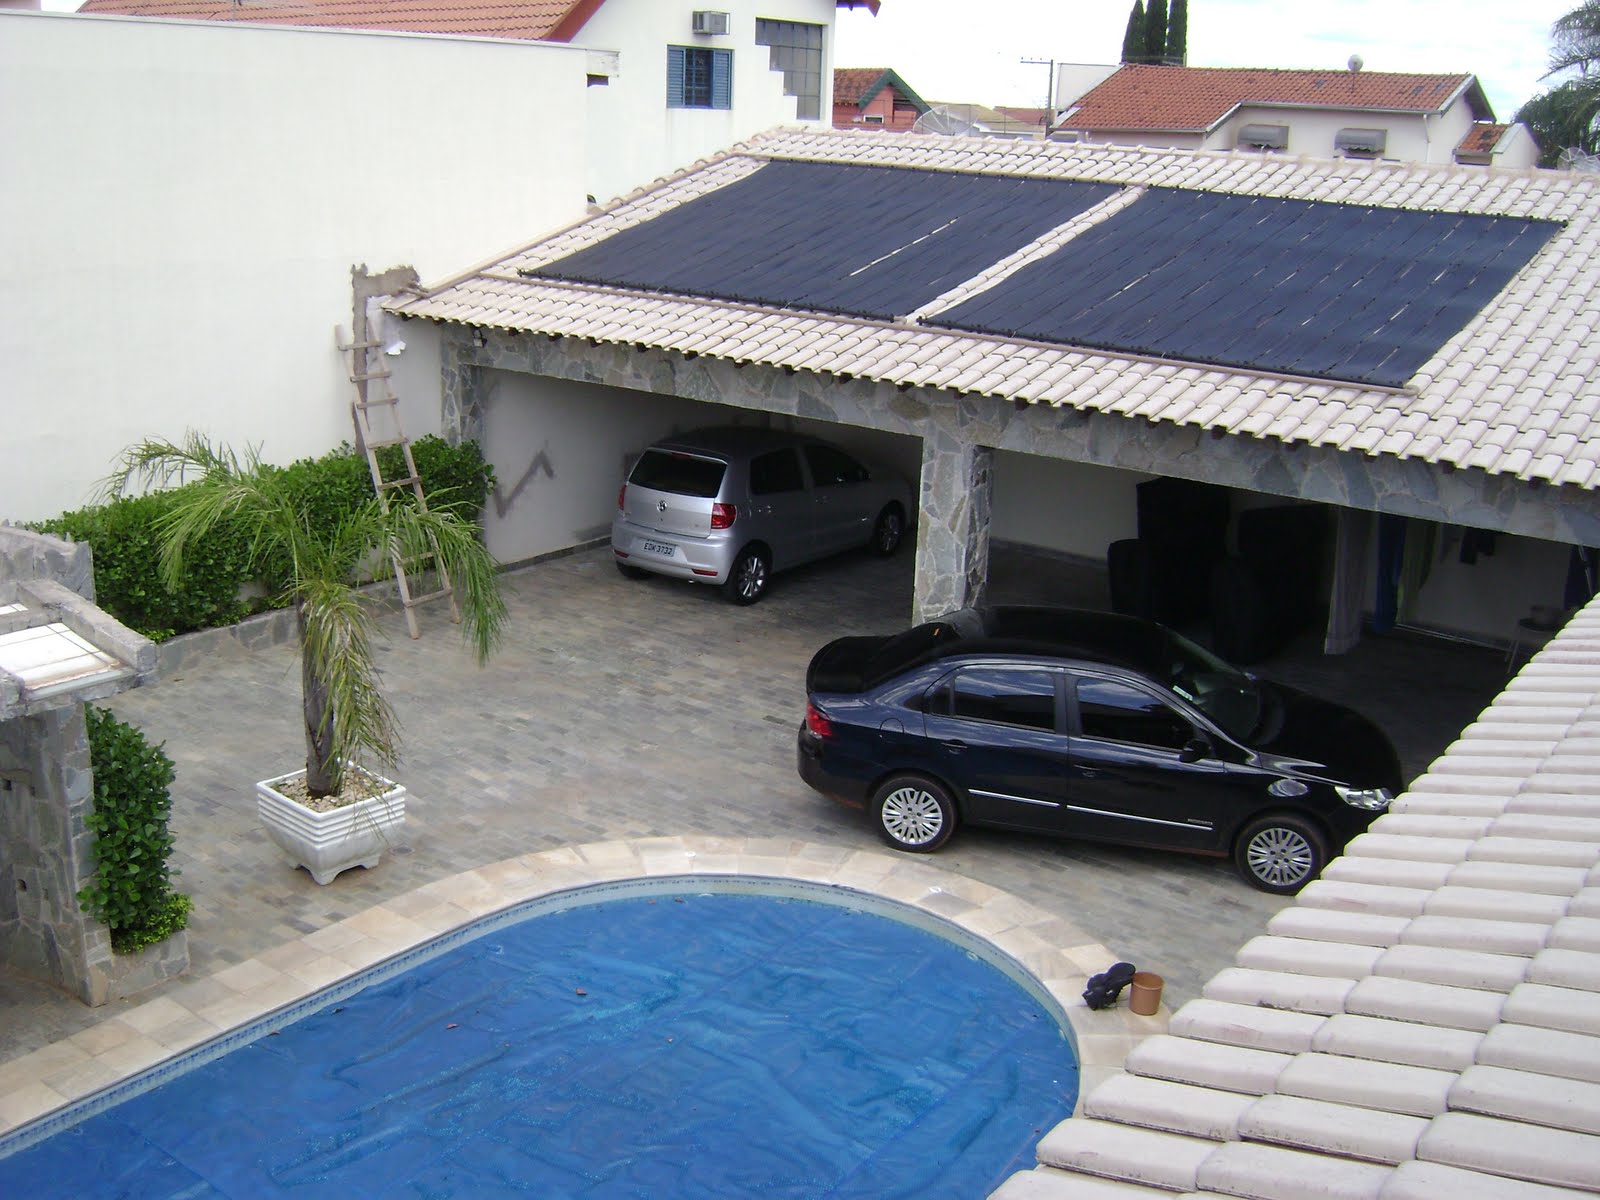 aquecimento-solar-para-piscina-telhado